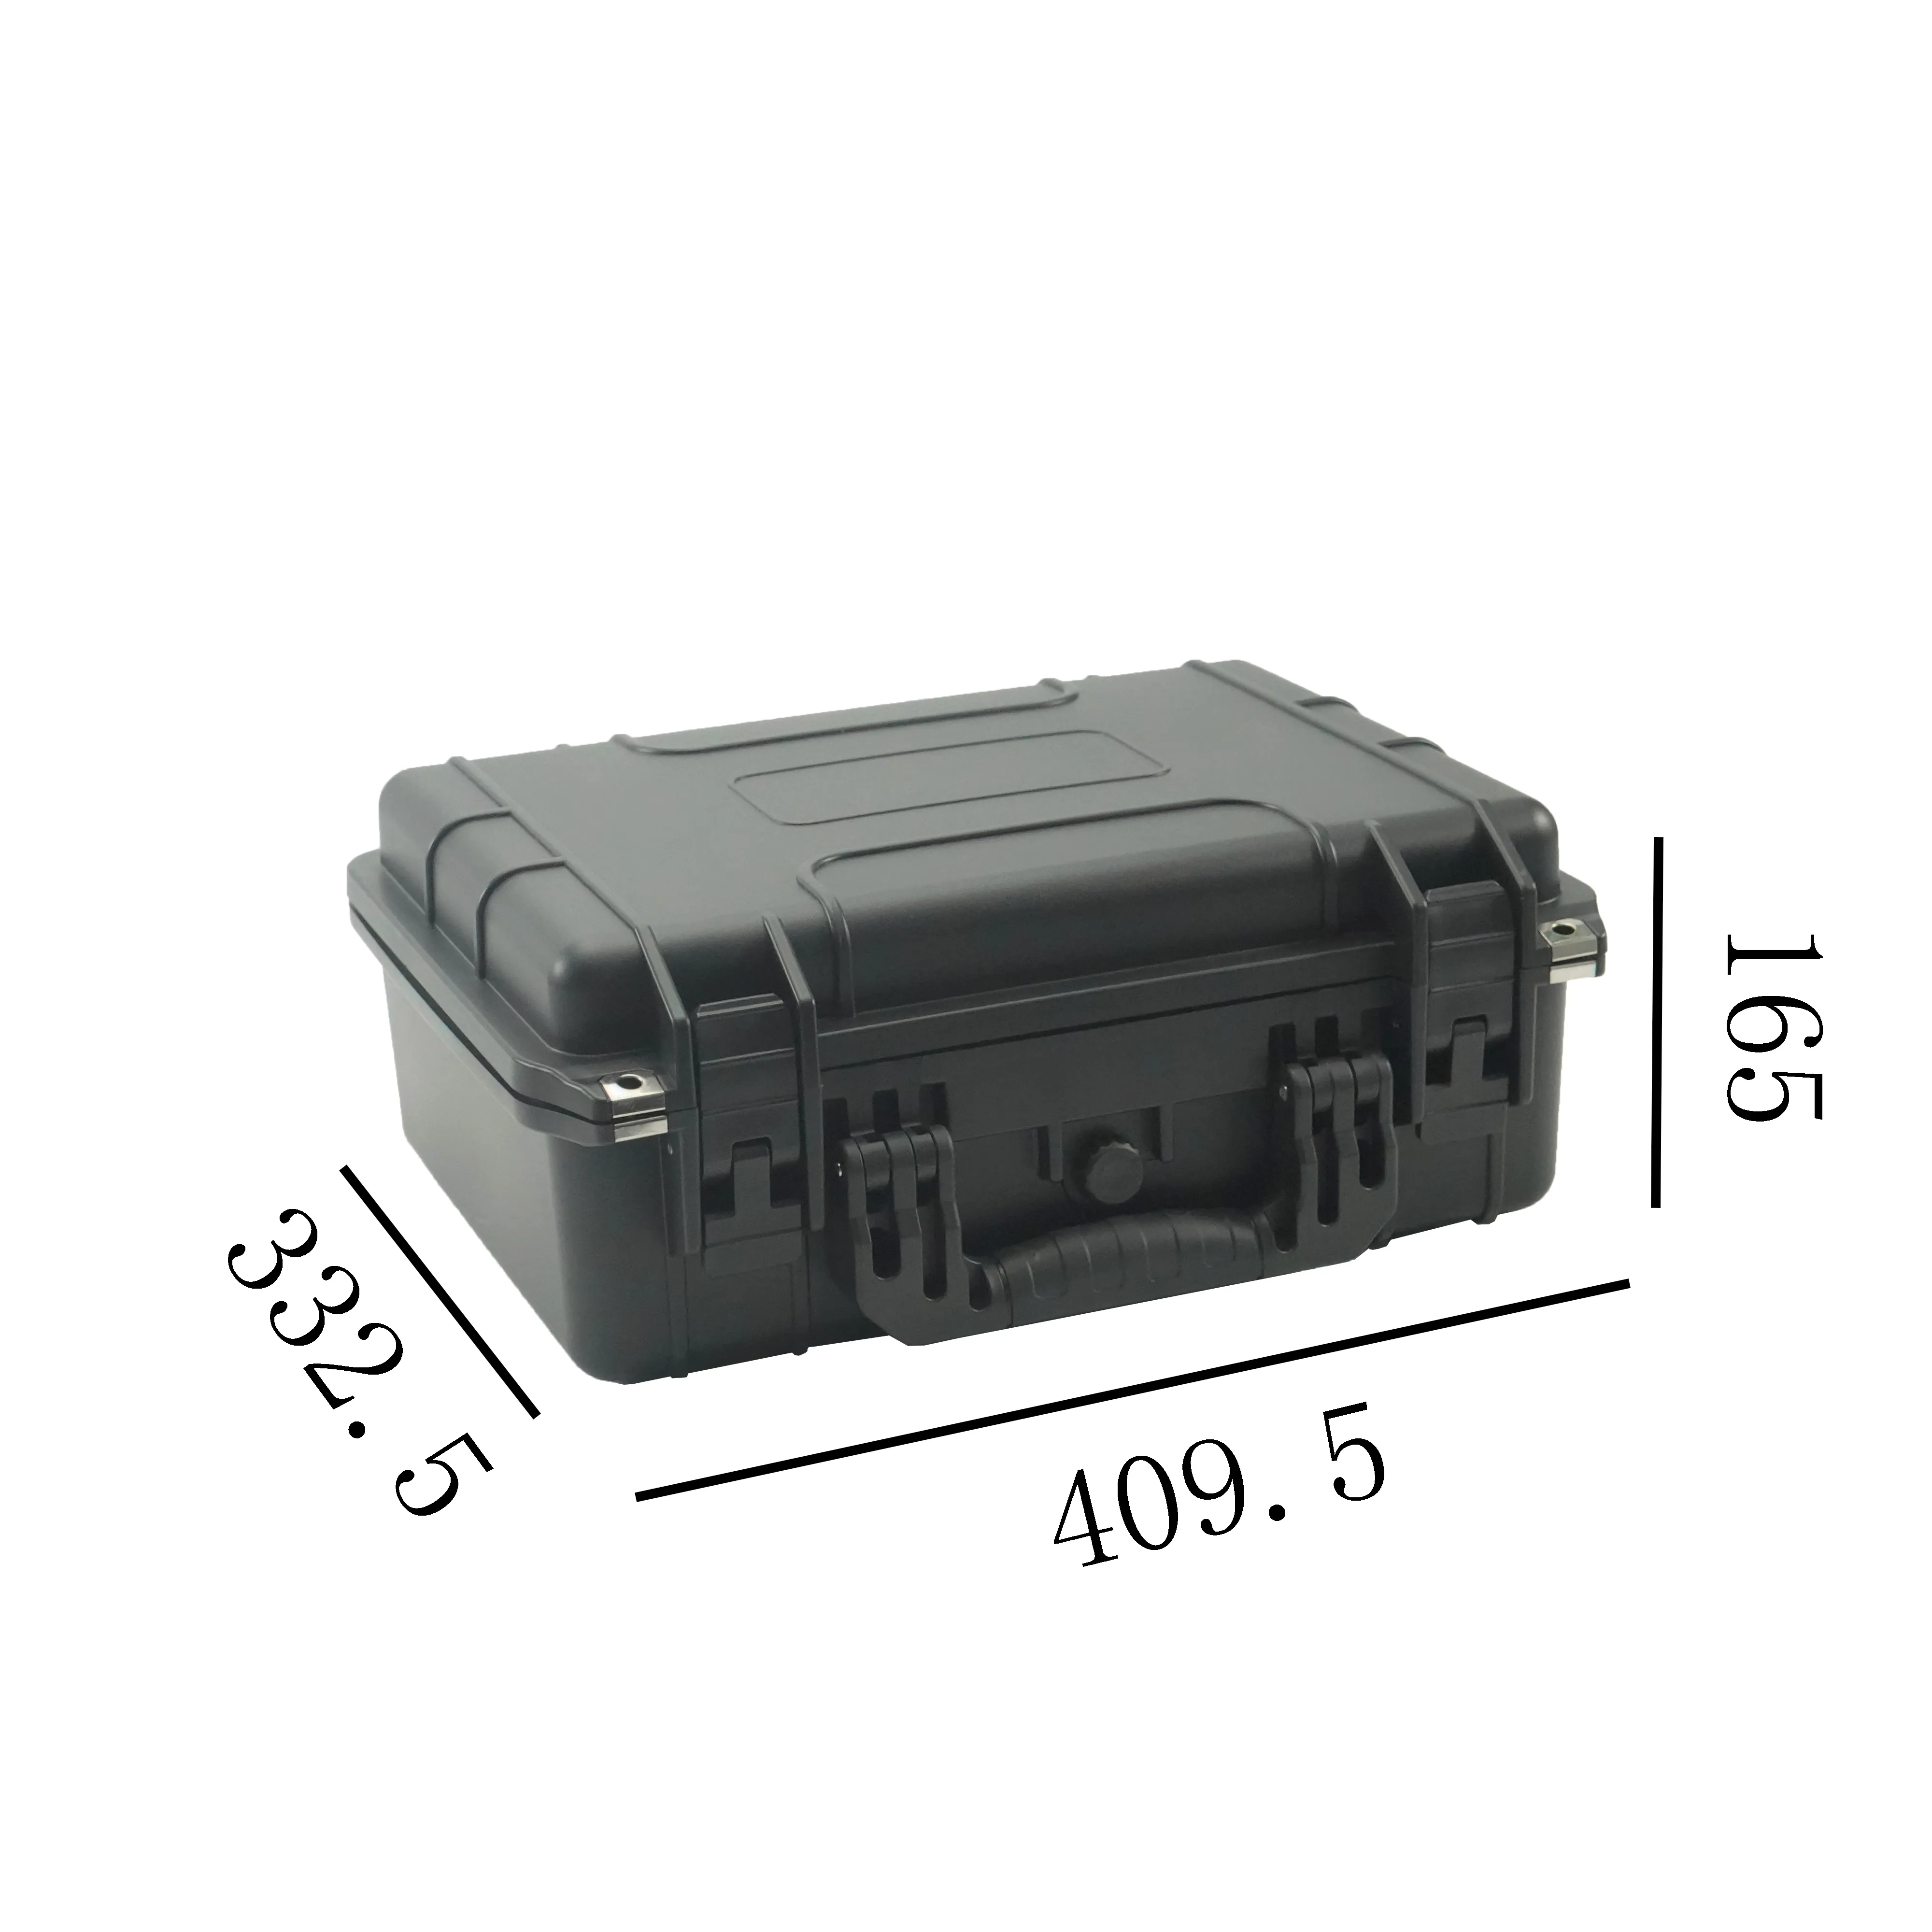 निविड़ अंधकार हार्ड प्रकरण फोम हार्ड पक्षीय कैमरे का केस के साथ प्लास्टिक आउटडोर सामरिक सुरक्षा उपकरण बॉक्स के लिए यात्रा कार उपकरण उपकरण